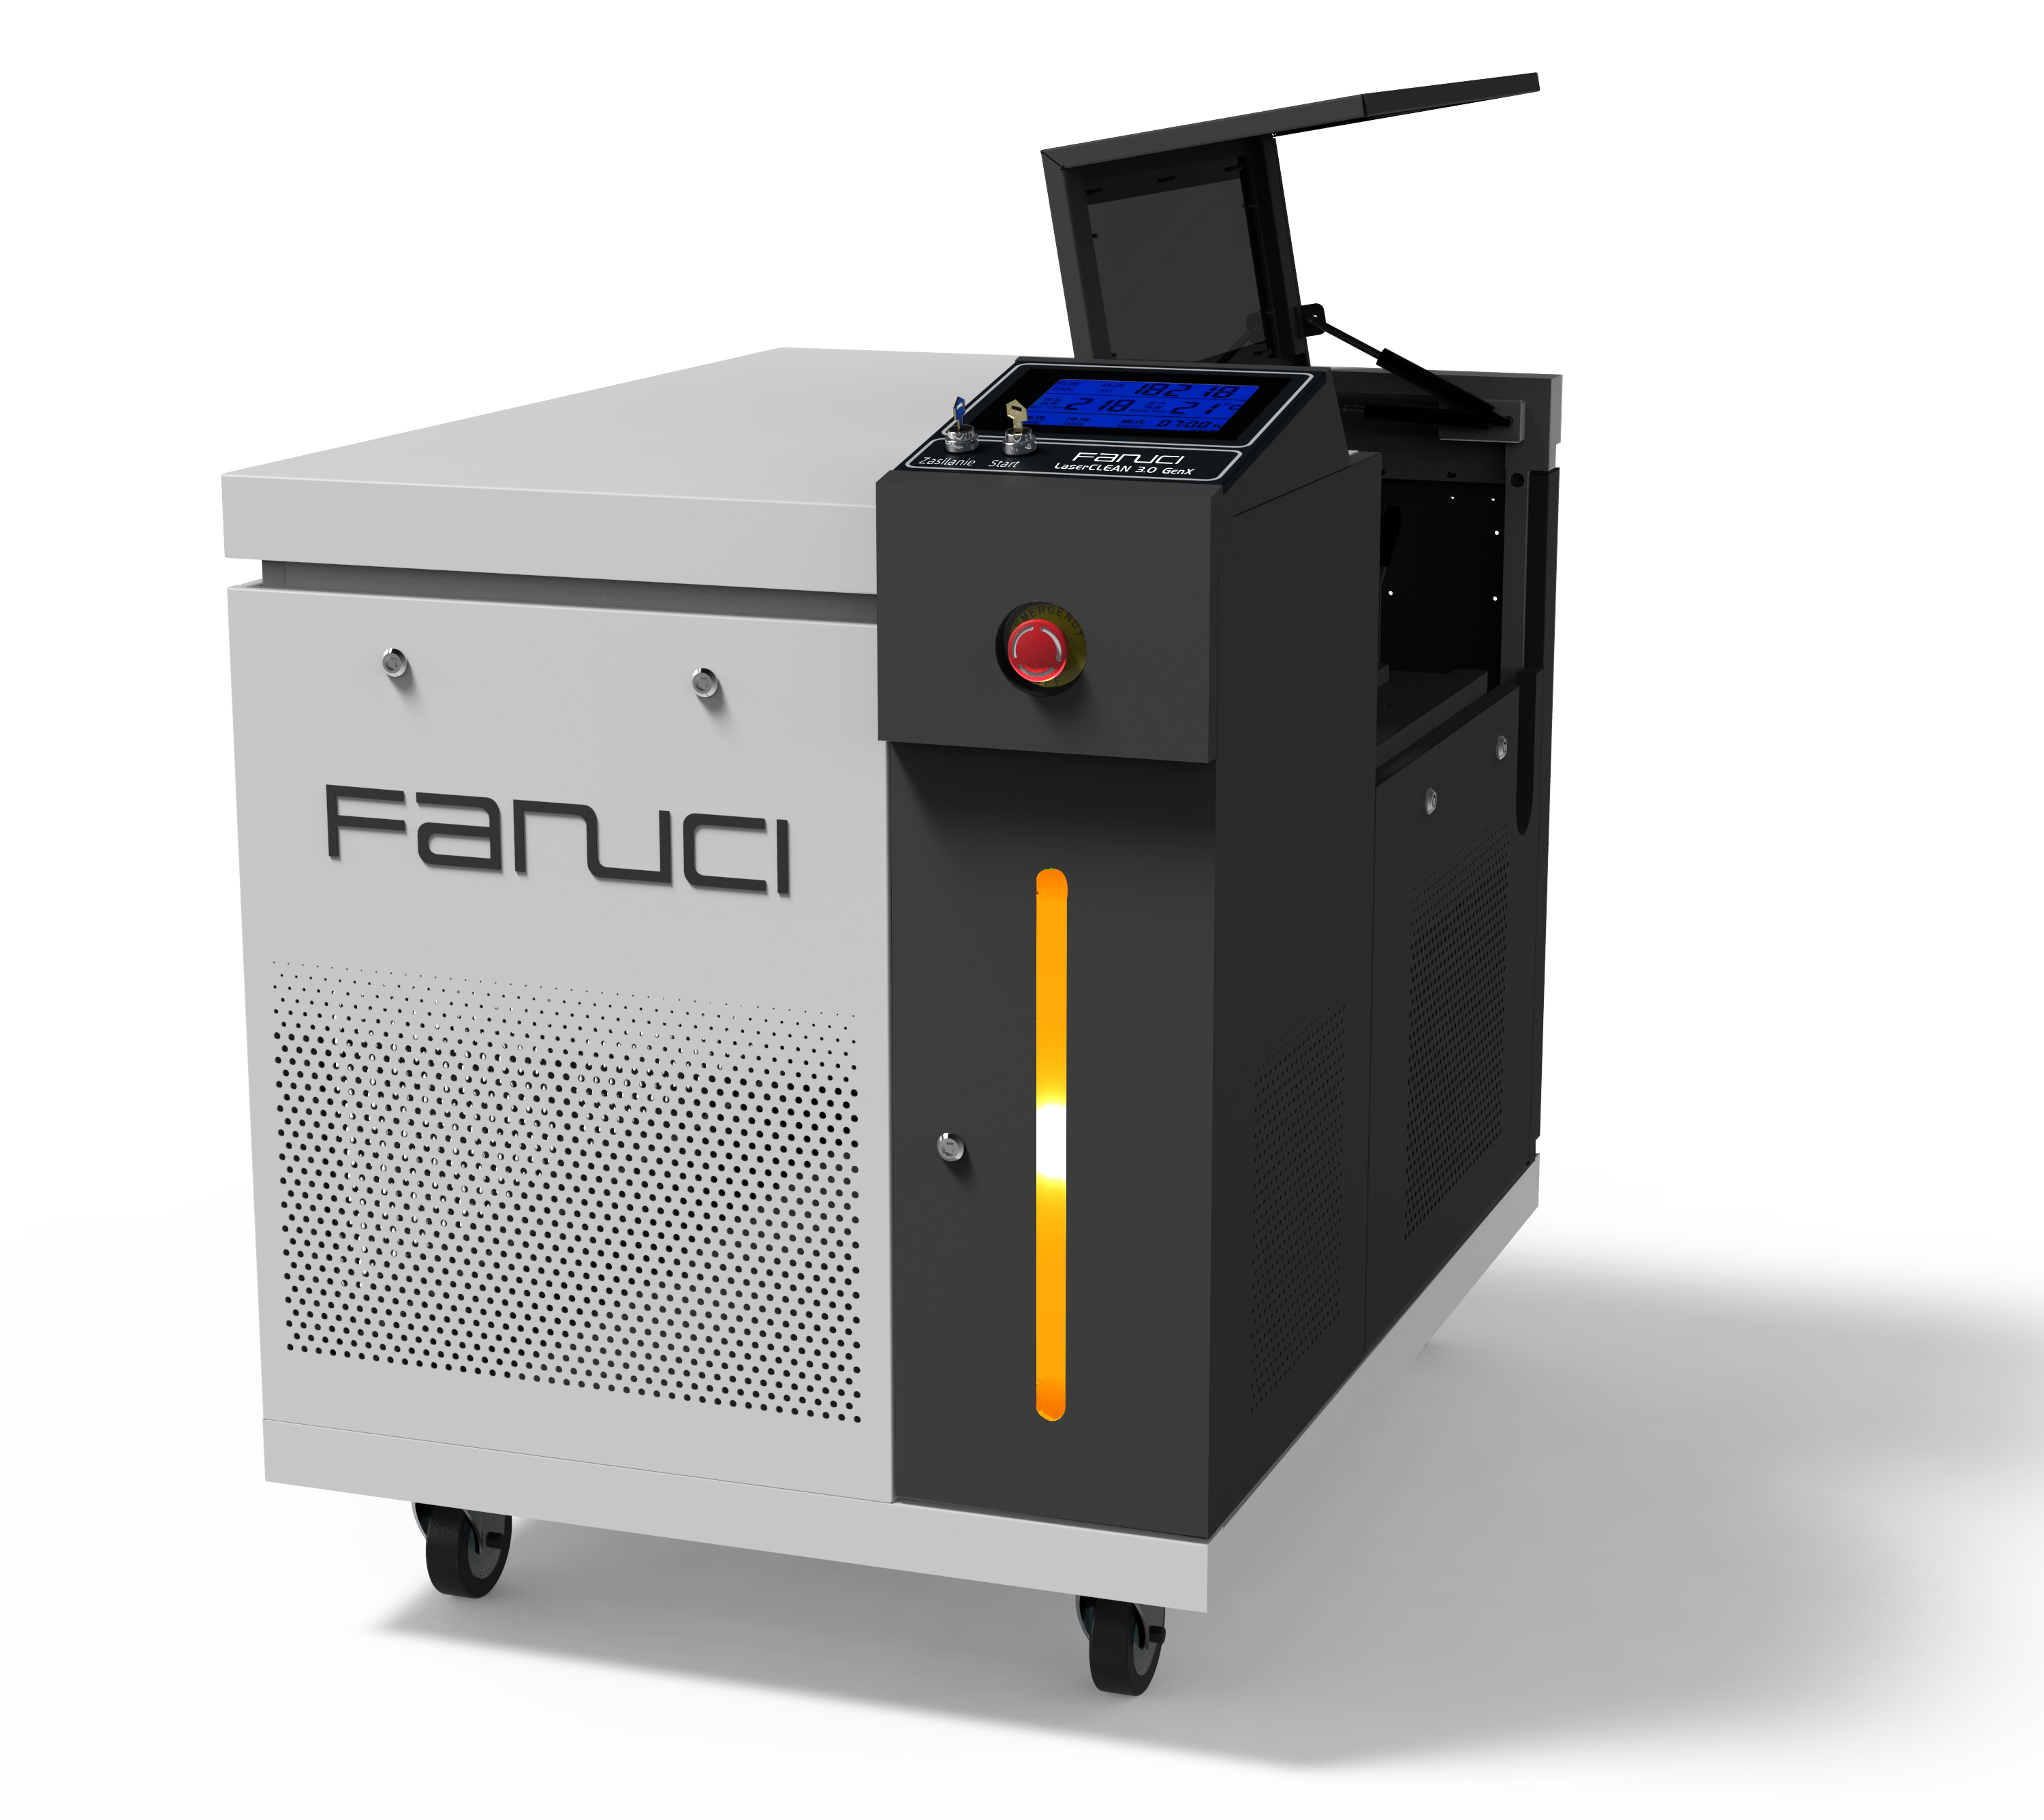 Kompaktní laserový svařovací stroj FANUCI® Pro čtyři v jednom bude odeslán do Evropy